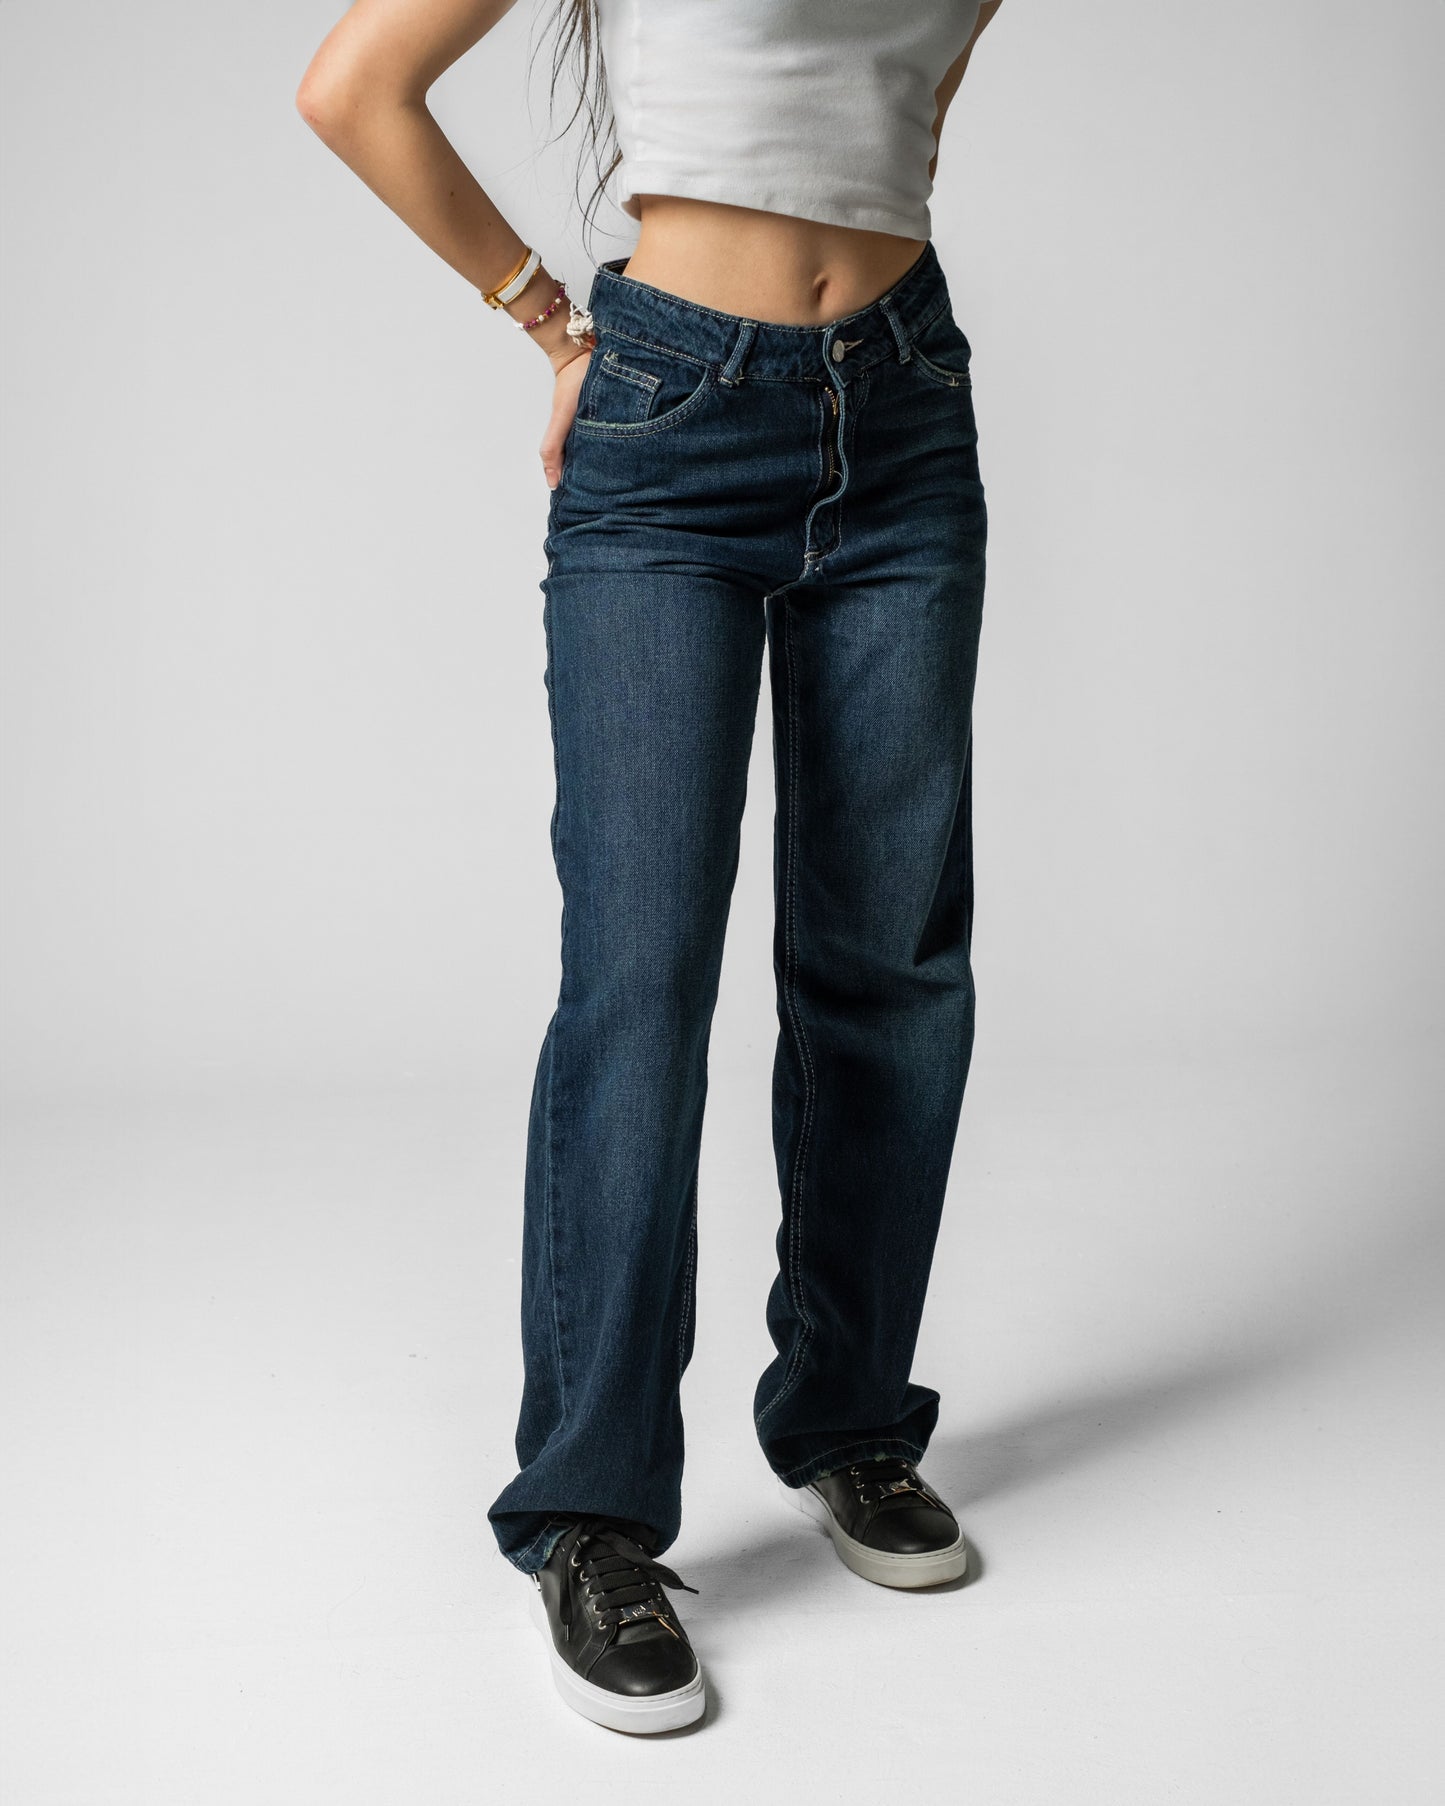 90s Fit Women's Jeans (Dark Blue)